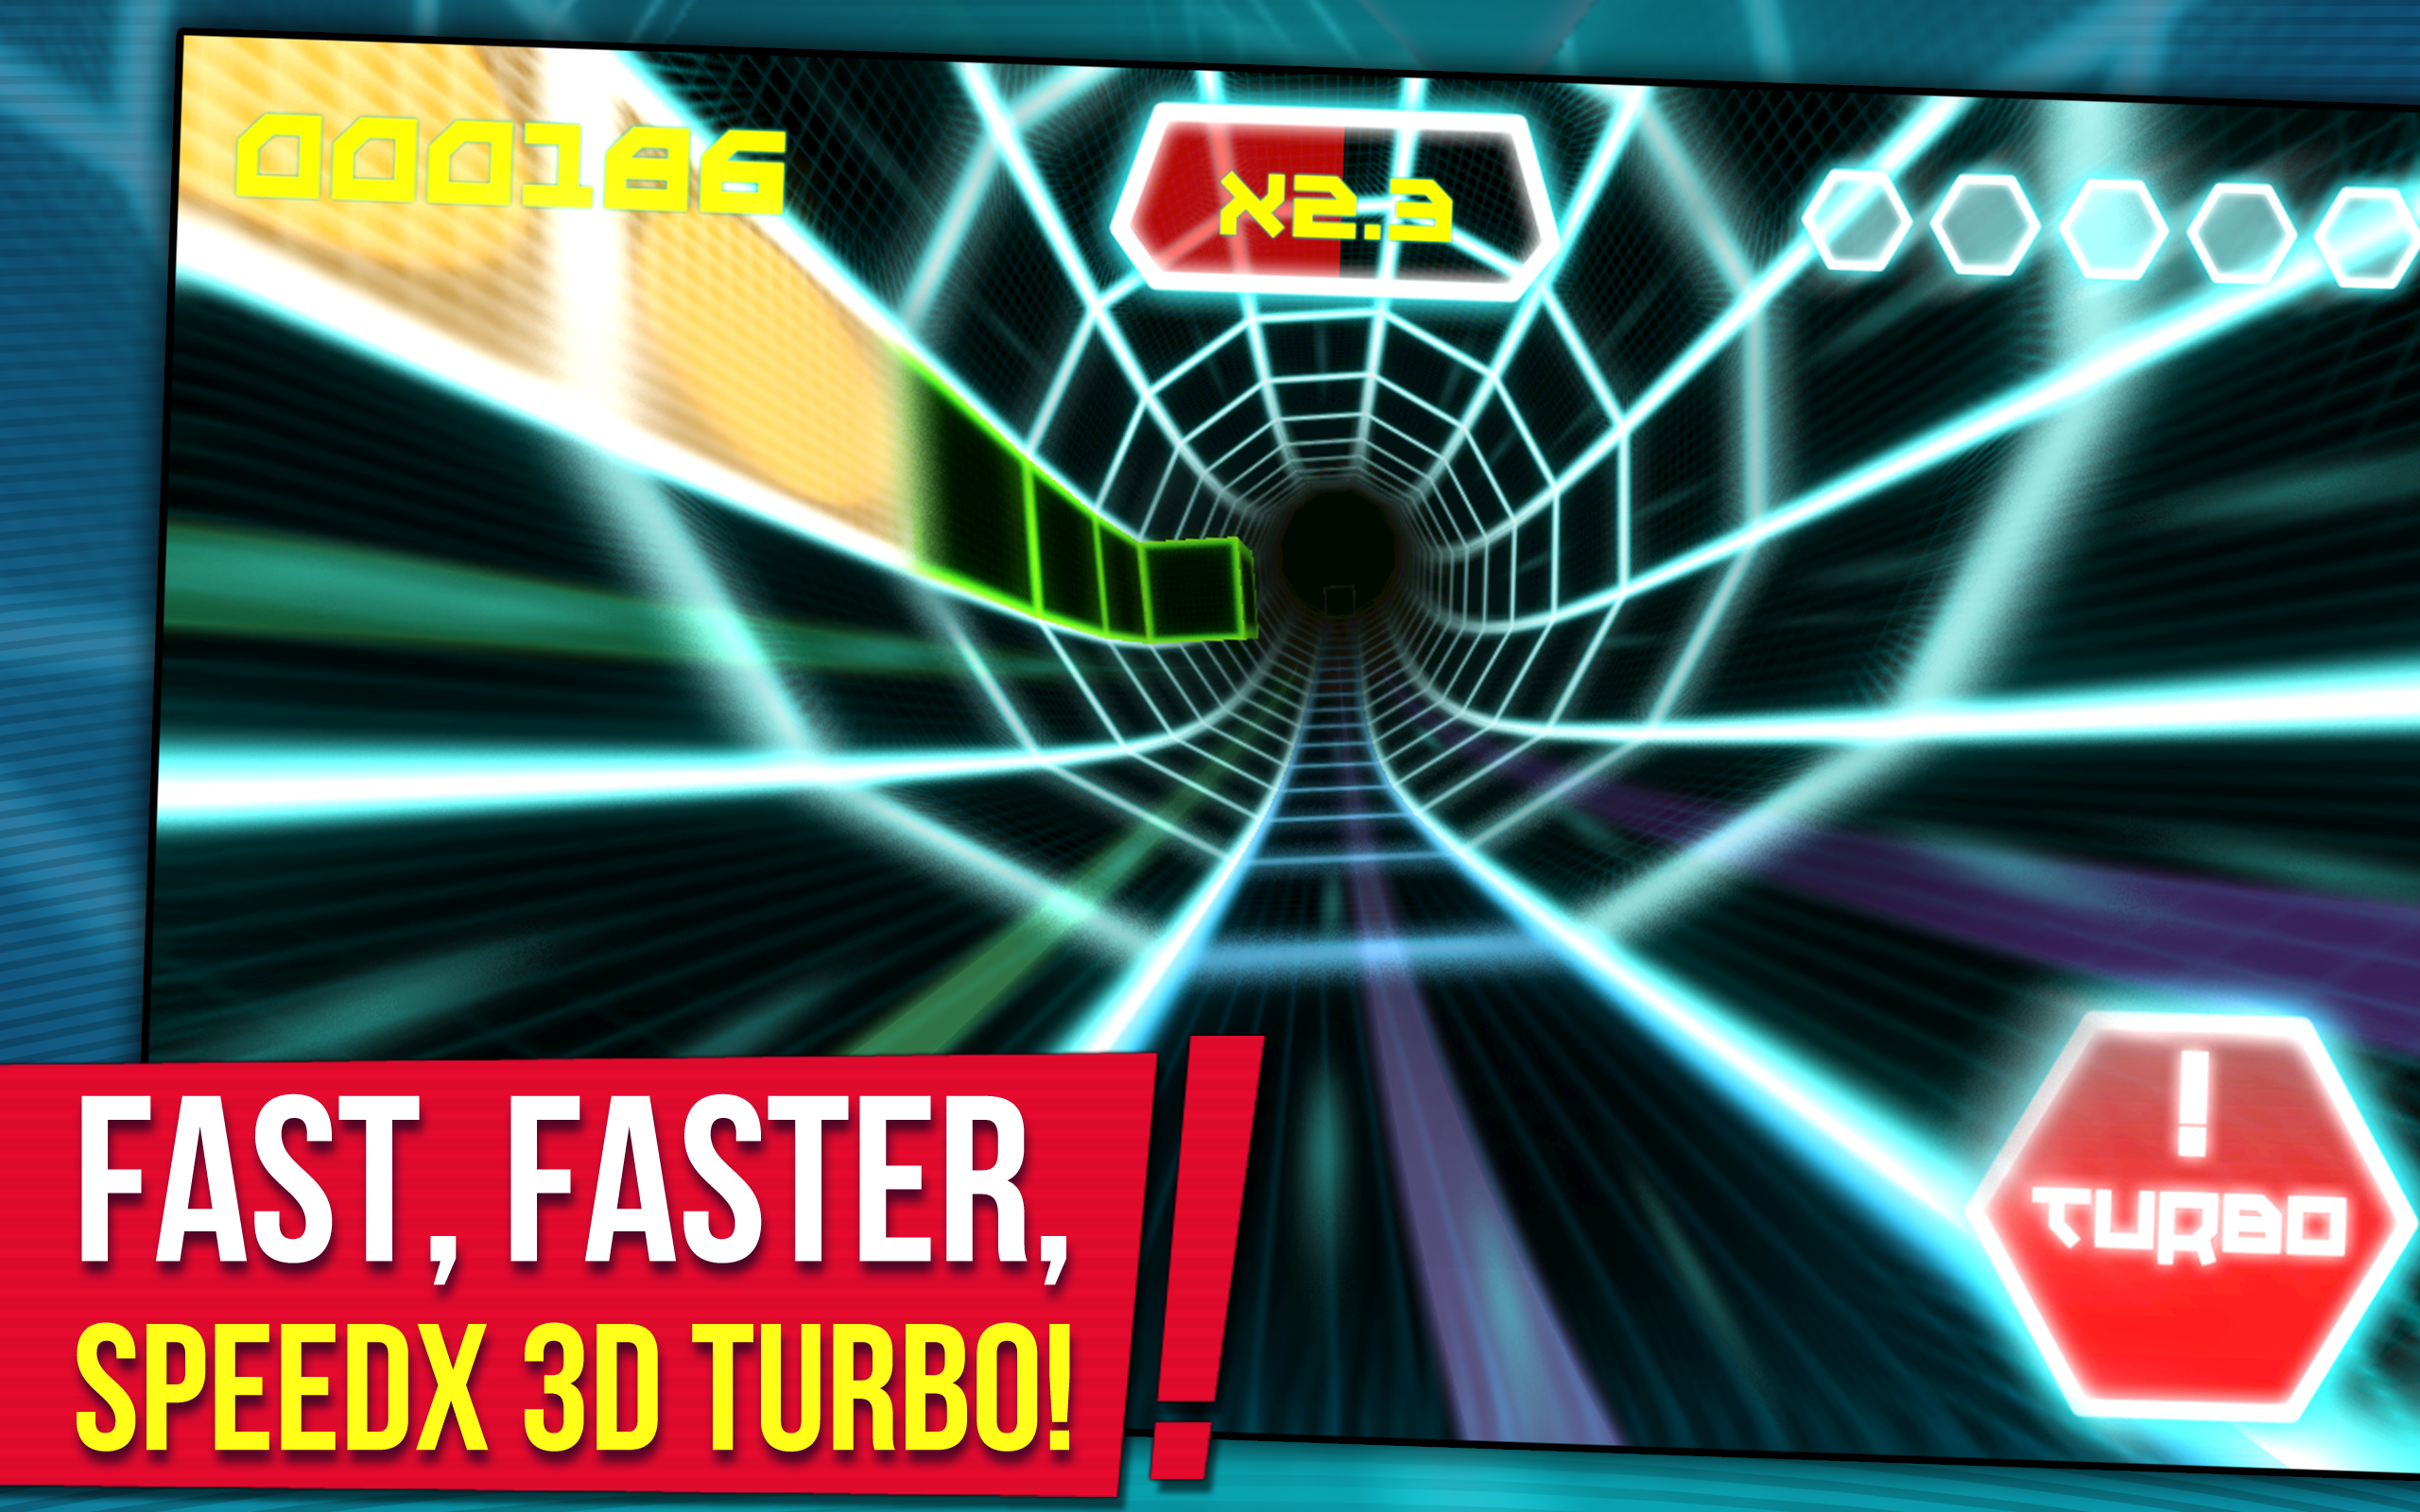 SpeedX 3D Turboのキャプチャ